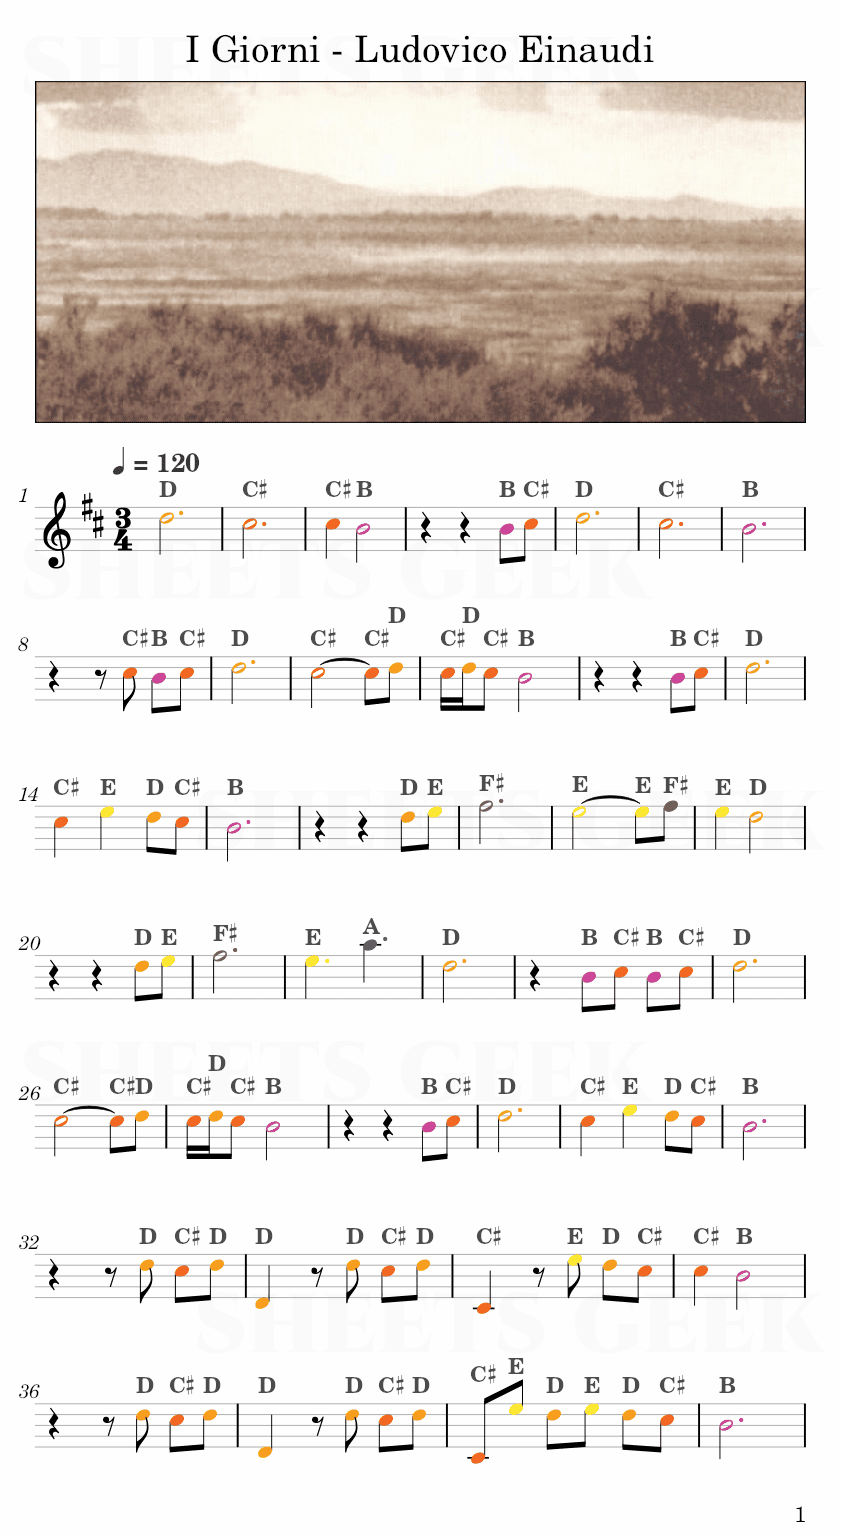 I Giorni - Ludovico Einaudi Easy Sheet Music Free for piano, keyboard, flute, violin, sax, cello page 1